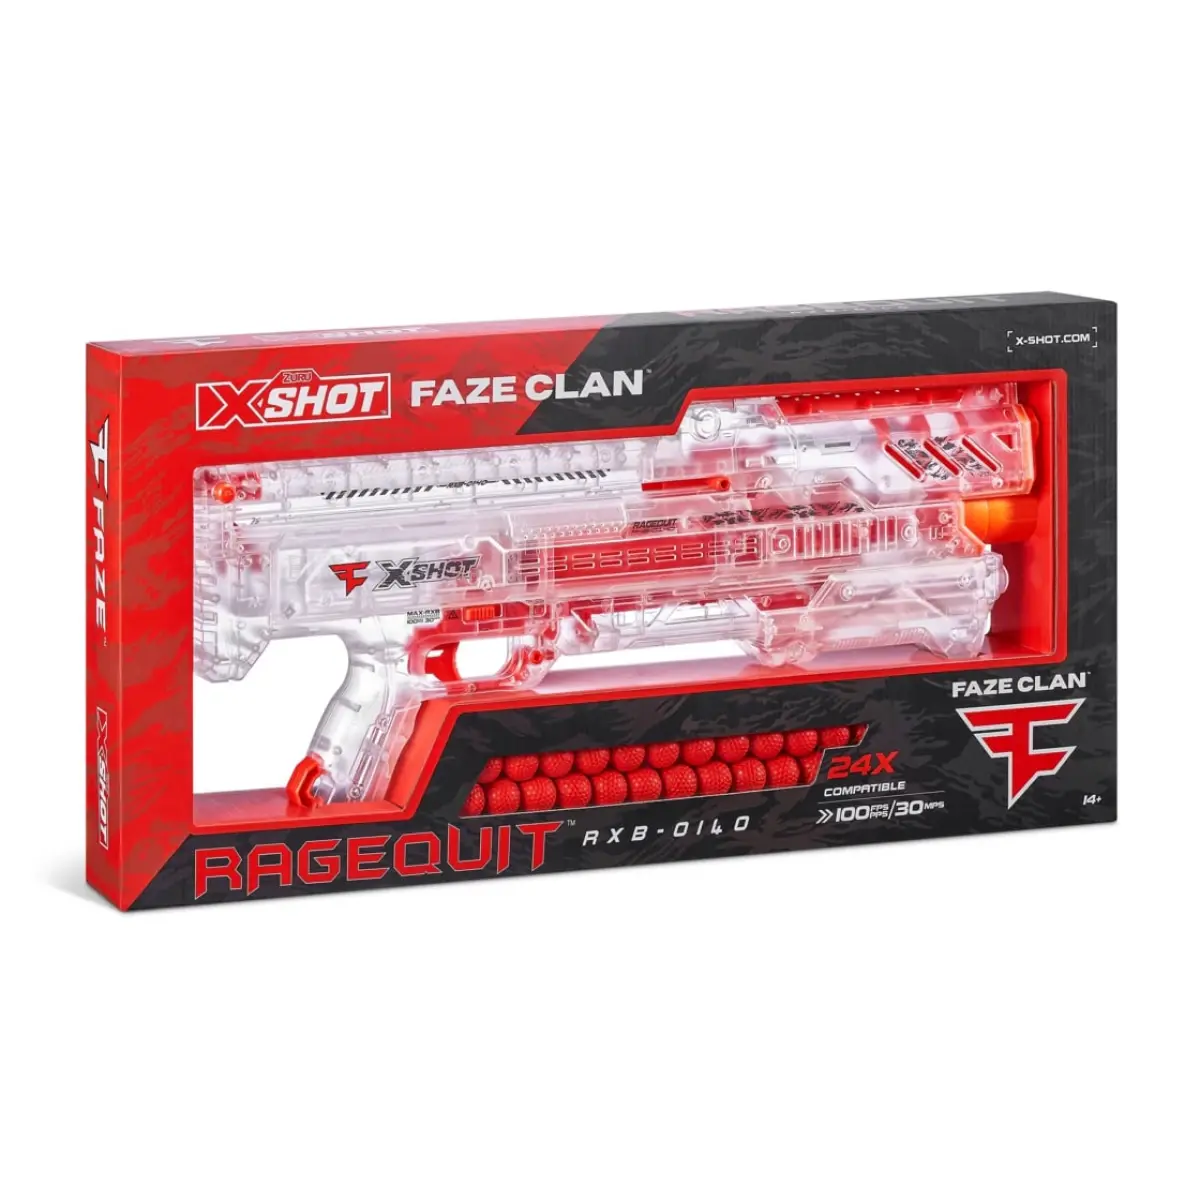 X-Shot Faze Ragequit Round Blaster (24 rounds), Red, 14Y+